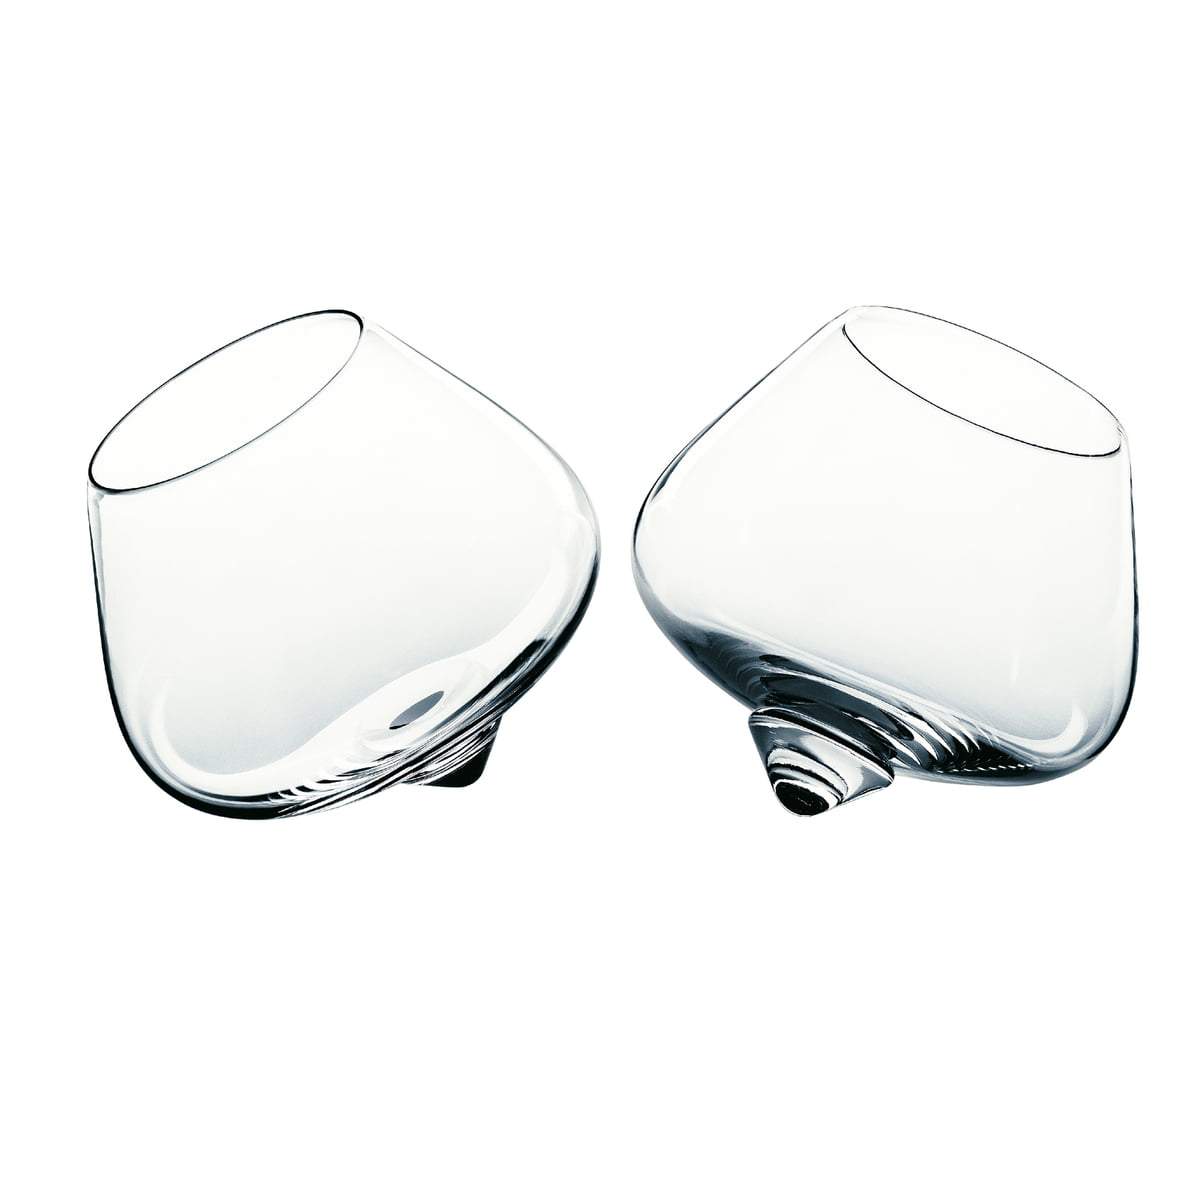 Cognac Glass - Set of 2 - MyConcept Hong Kong